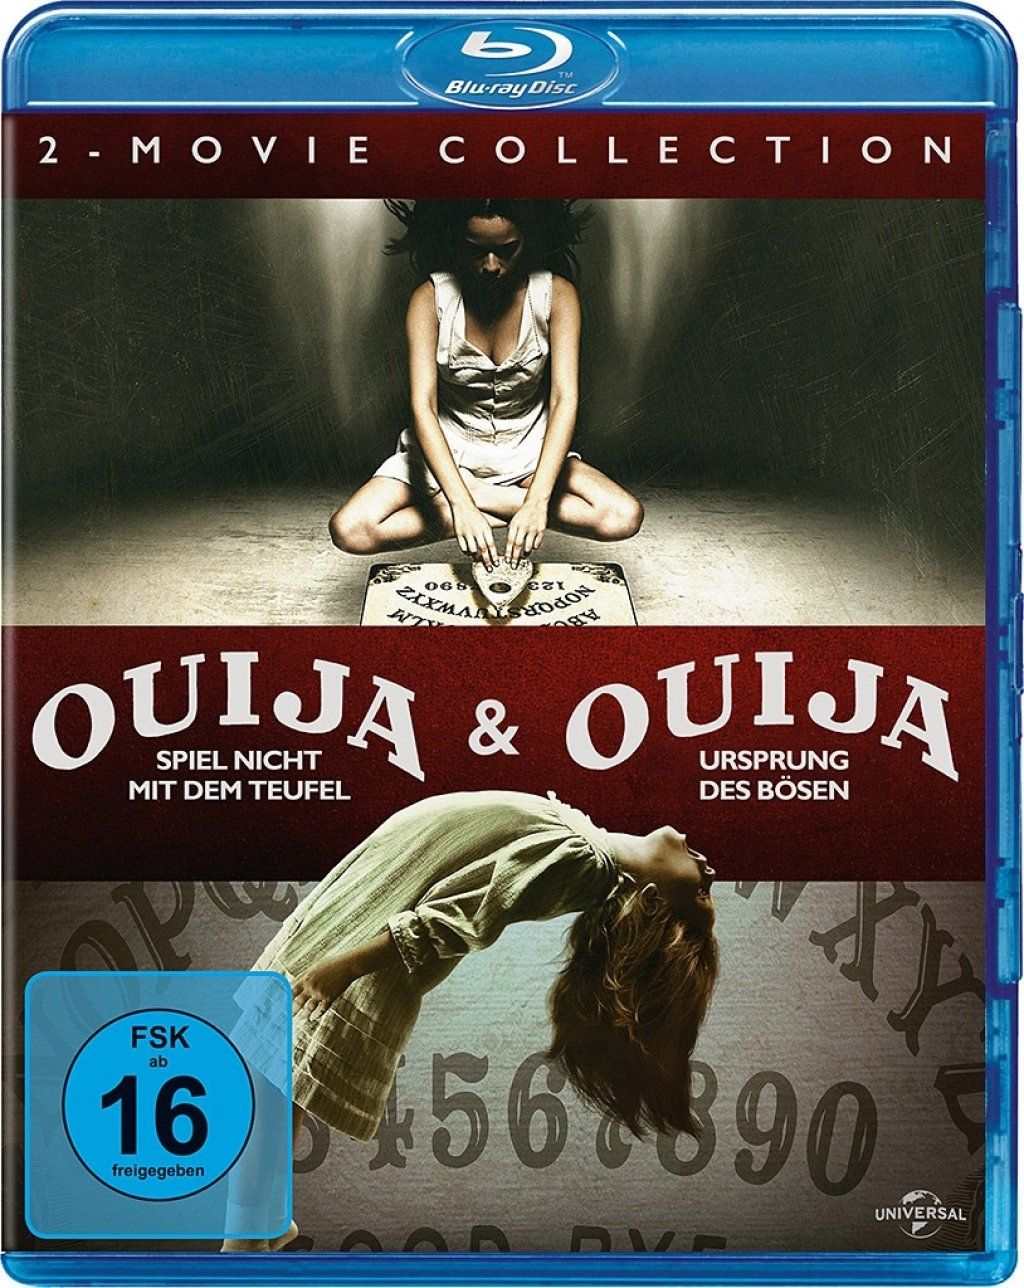 Ouija - Spiel nicht mit dem Teufel / Ouija - Ursprung des Bösen (Double Feature) (2 Discs) (BLURAY)